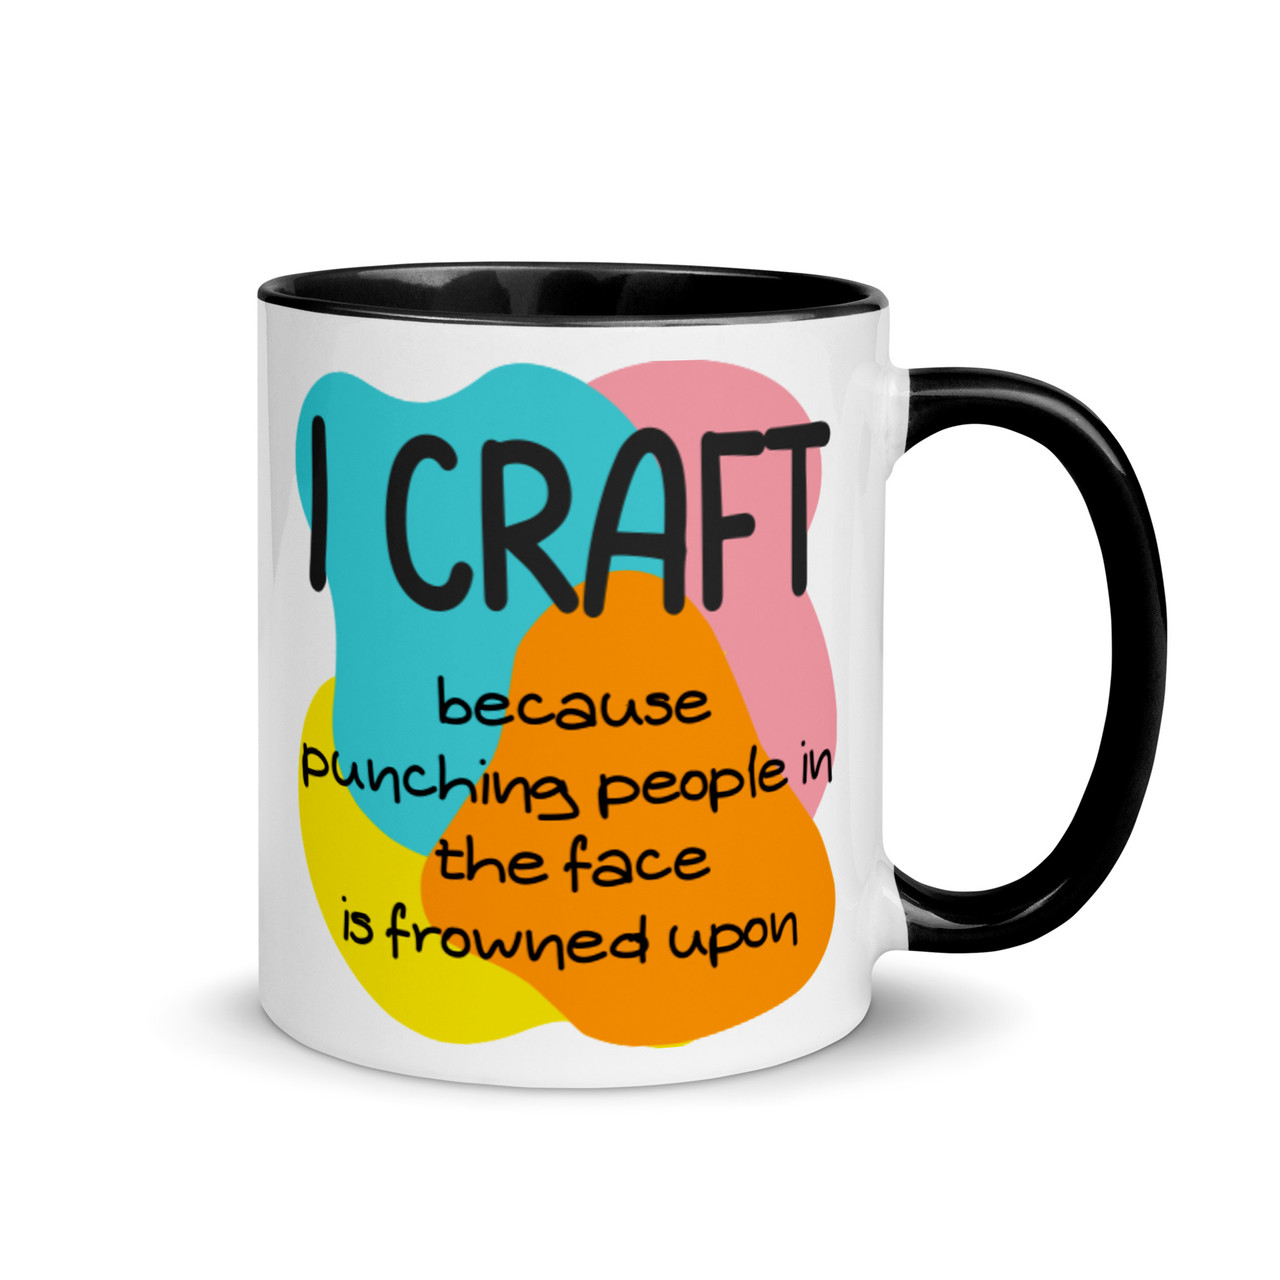 I craft because... - Mug with colour inside